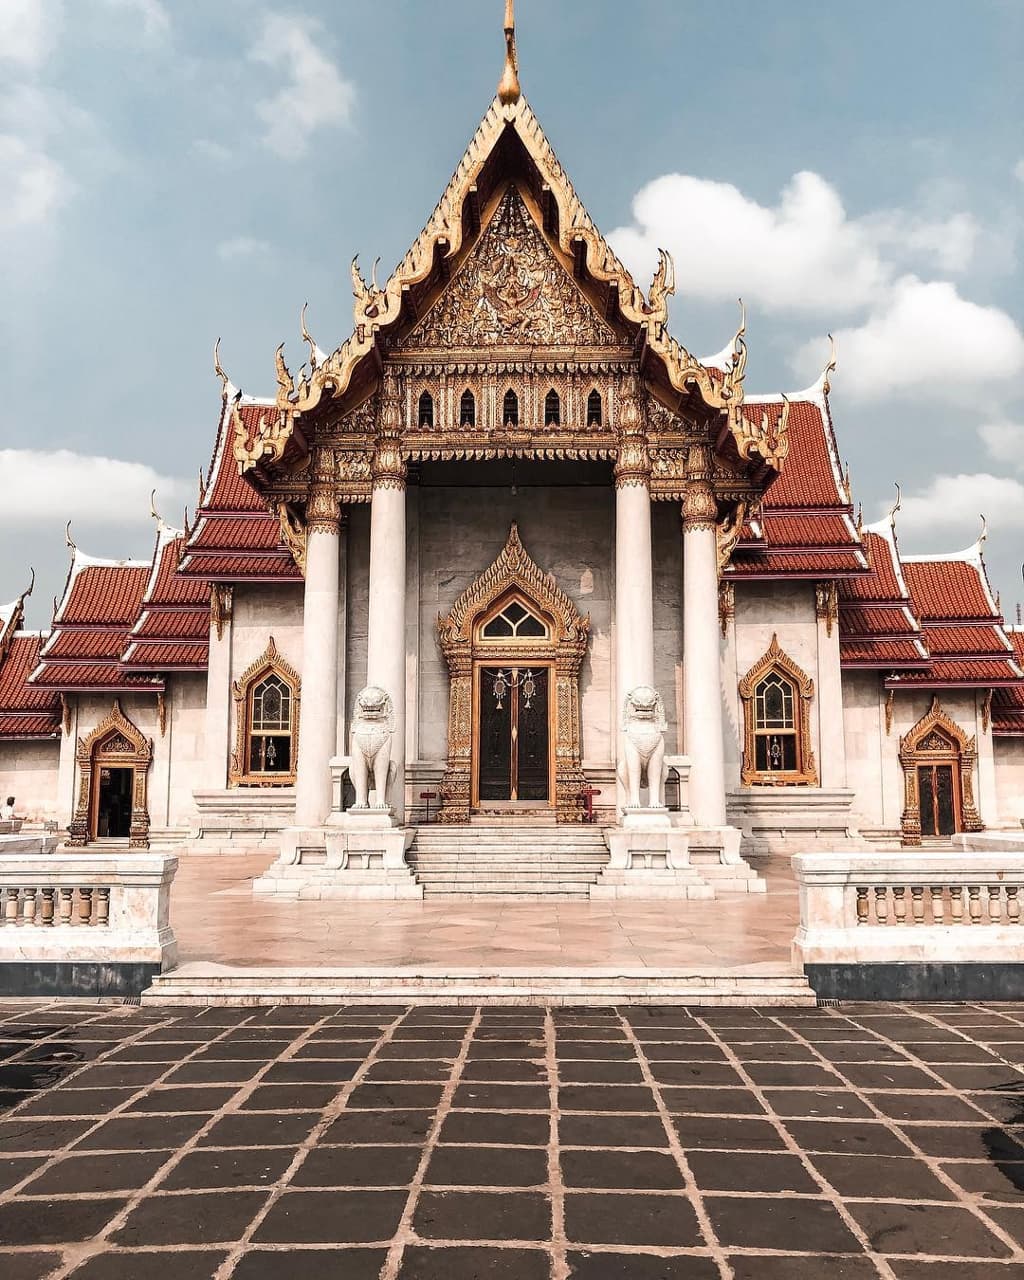 bangkok-city-tour-1-amazing-thailand-holiday-9-days-jpeg